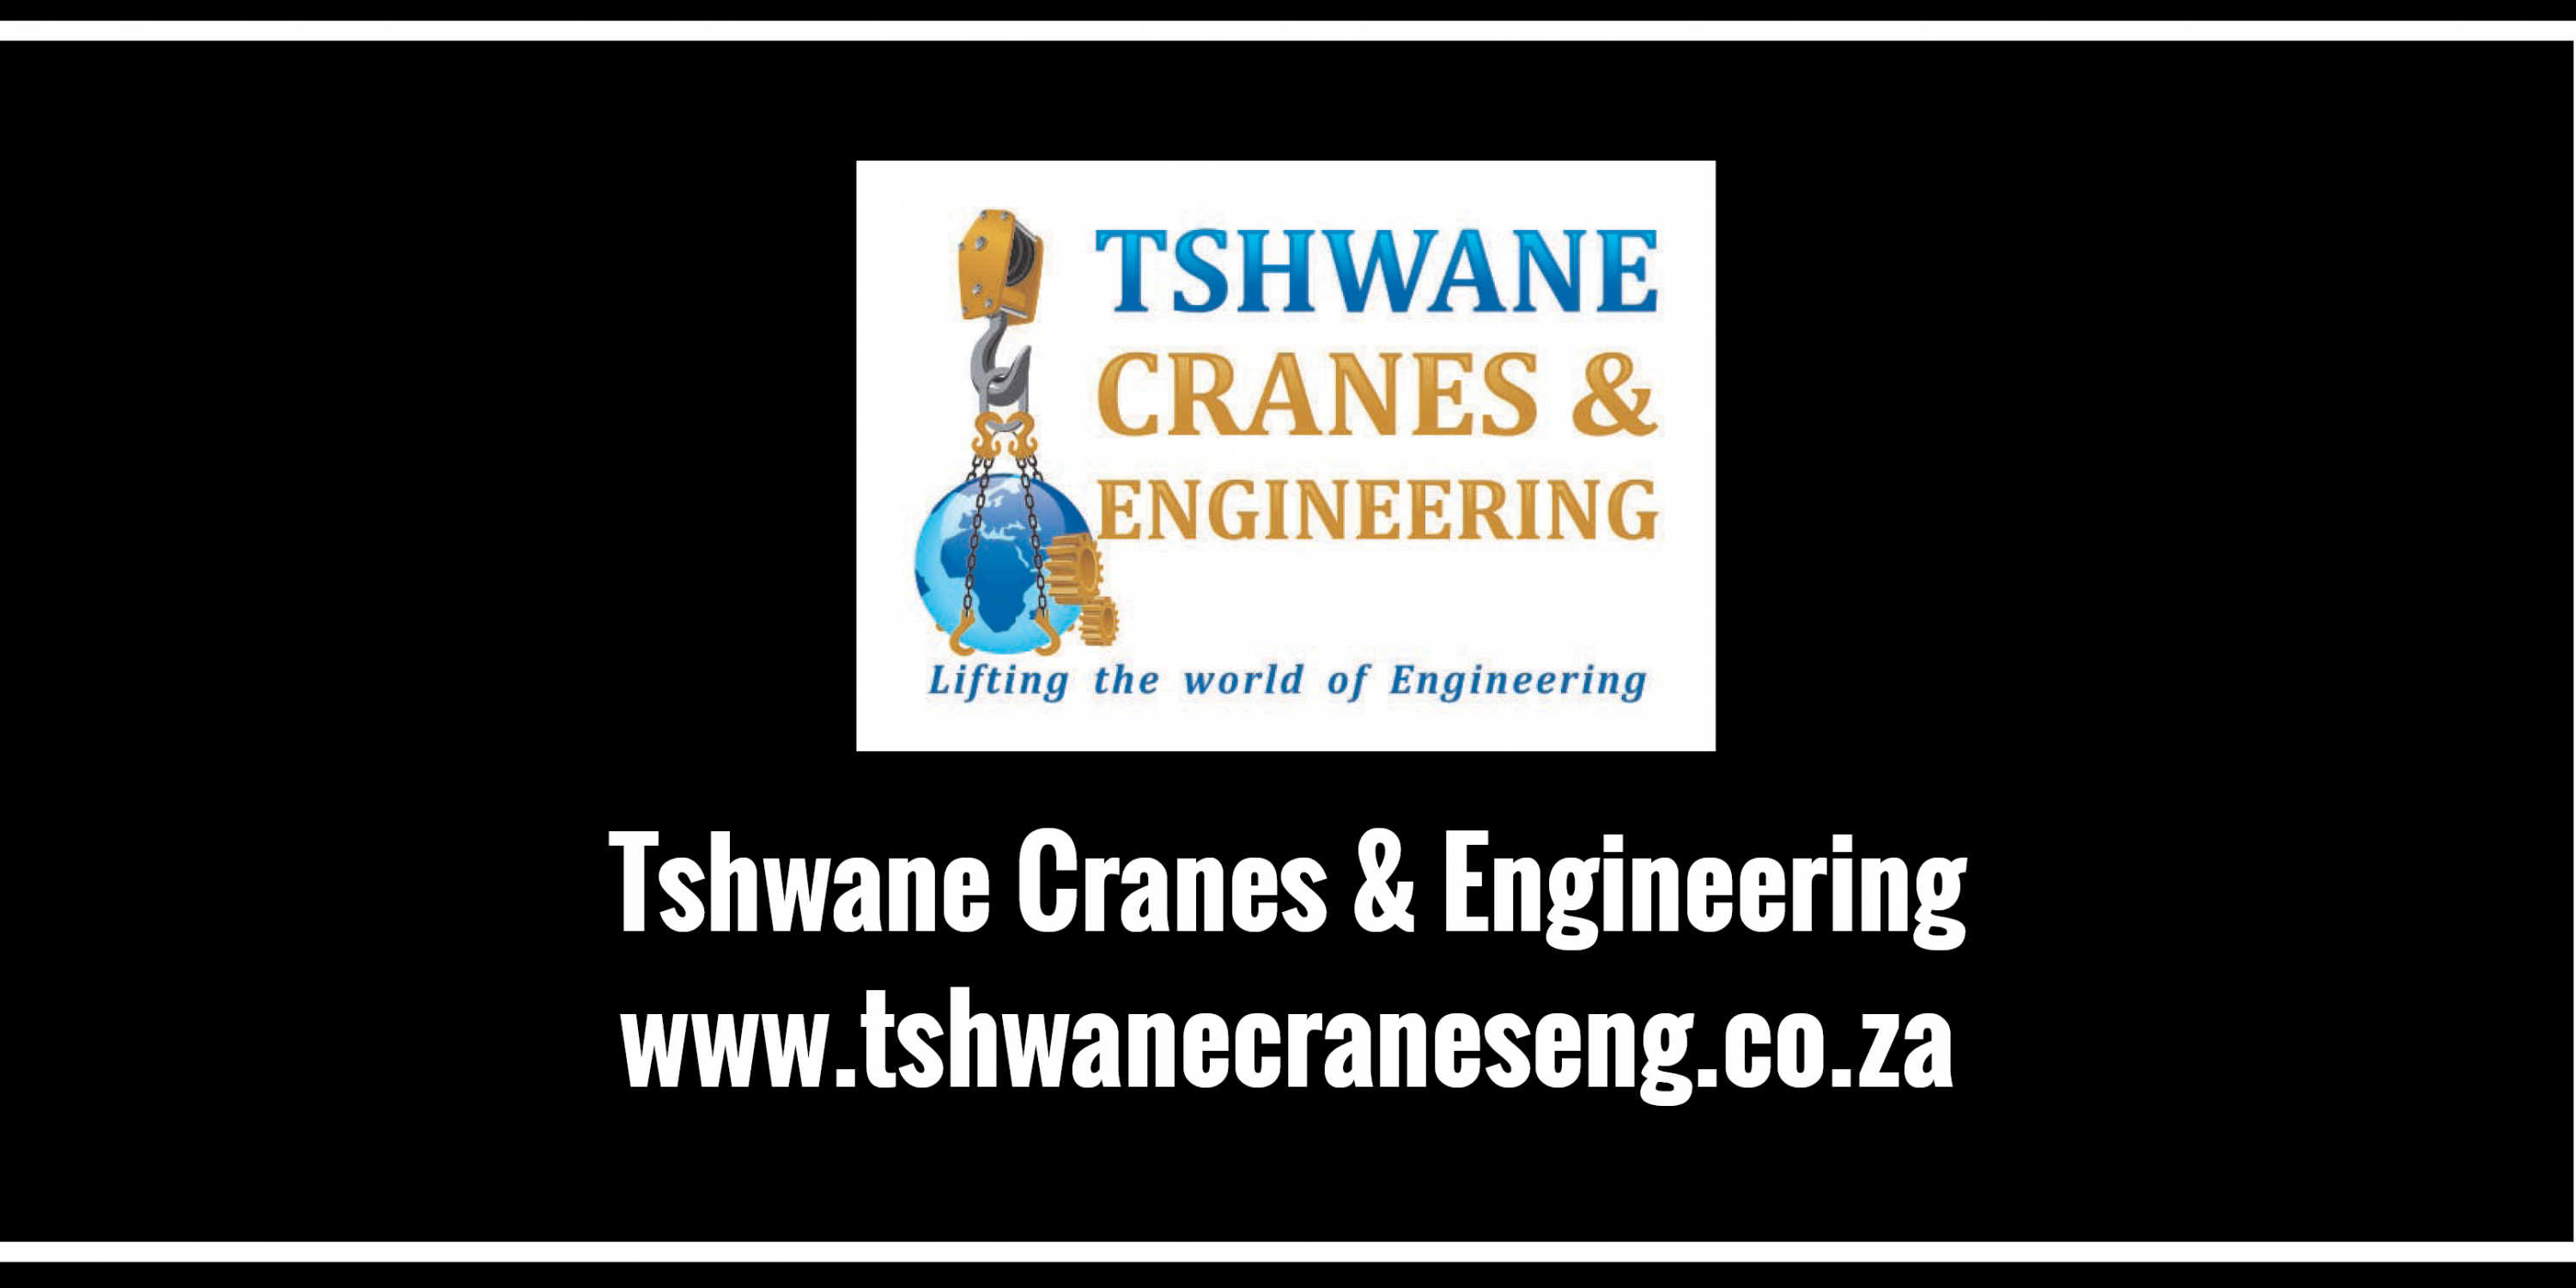 Tshwane Cranes & Engineering